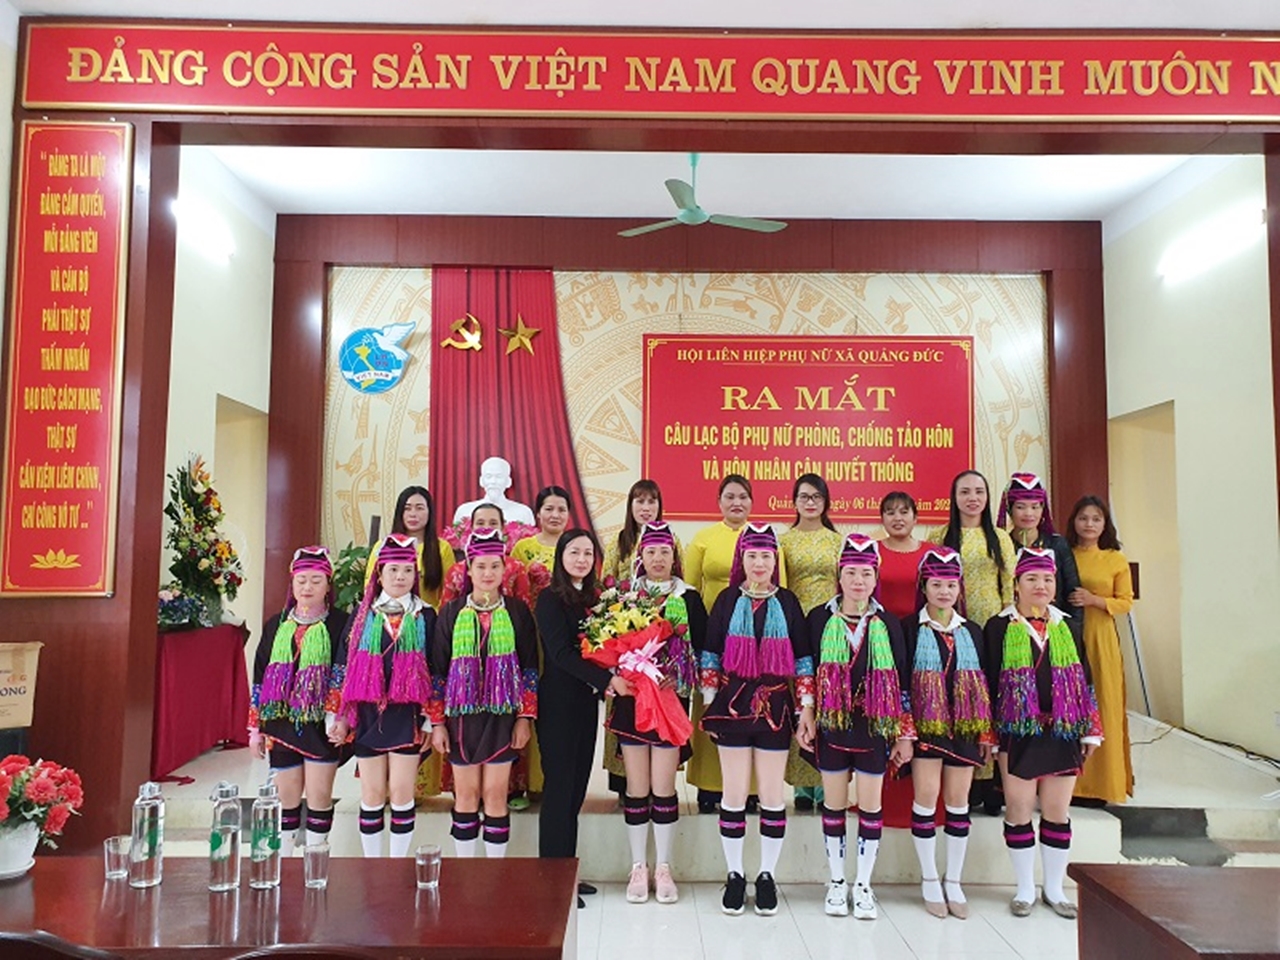 Ngày 6/3/2020, Hội LHPN xã Quảng Đức, huyện Hải Hà ra mắt CLB “Phụ nữ phòng, chống tảo hôn và hôn nhân cận huyết thống”. Ảnh: Trần Trinh (Trung tâm TT-VH Hải Hà)